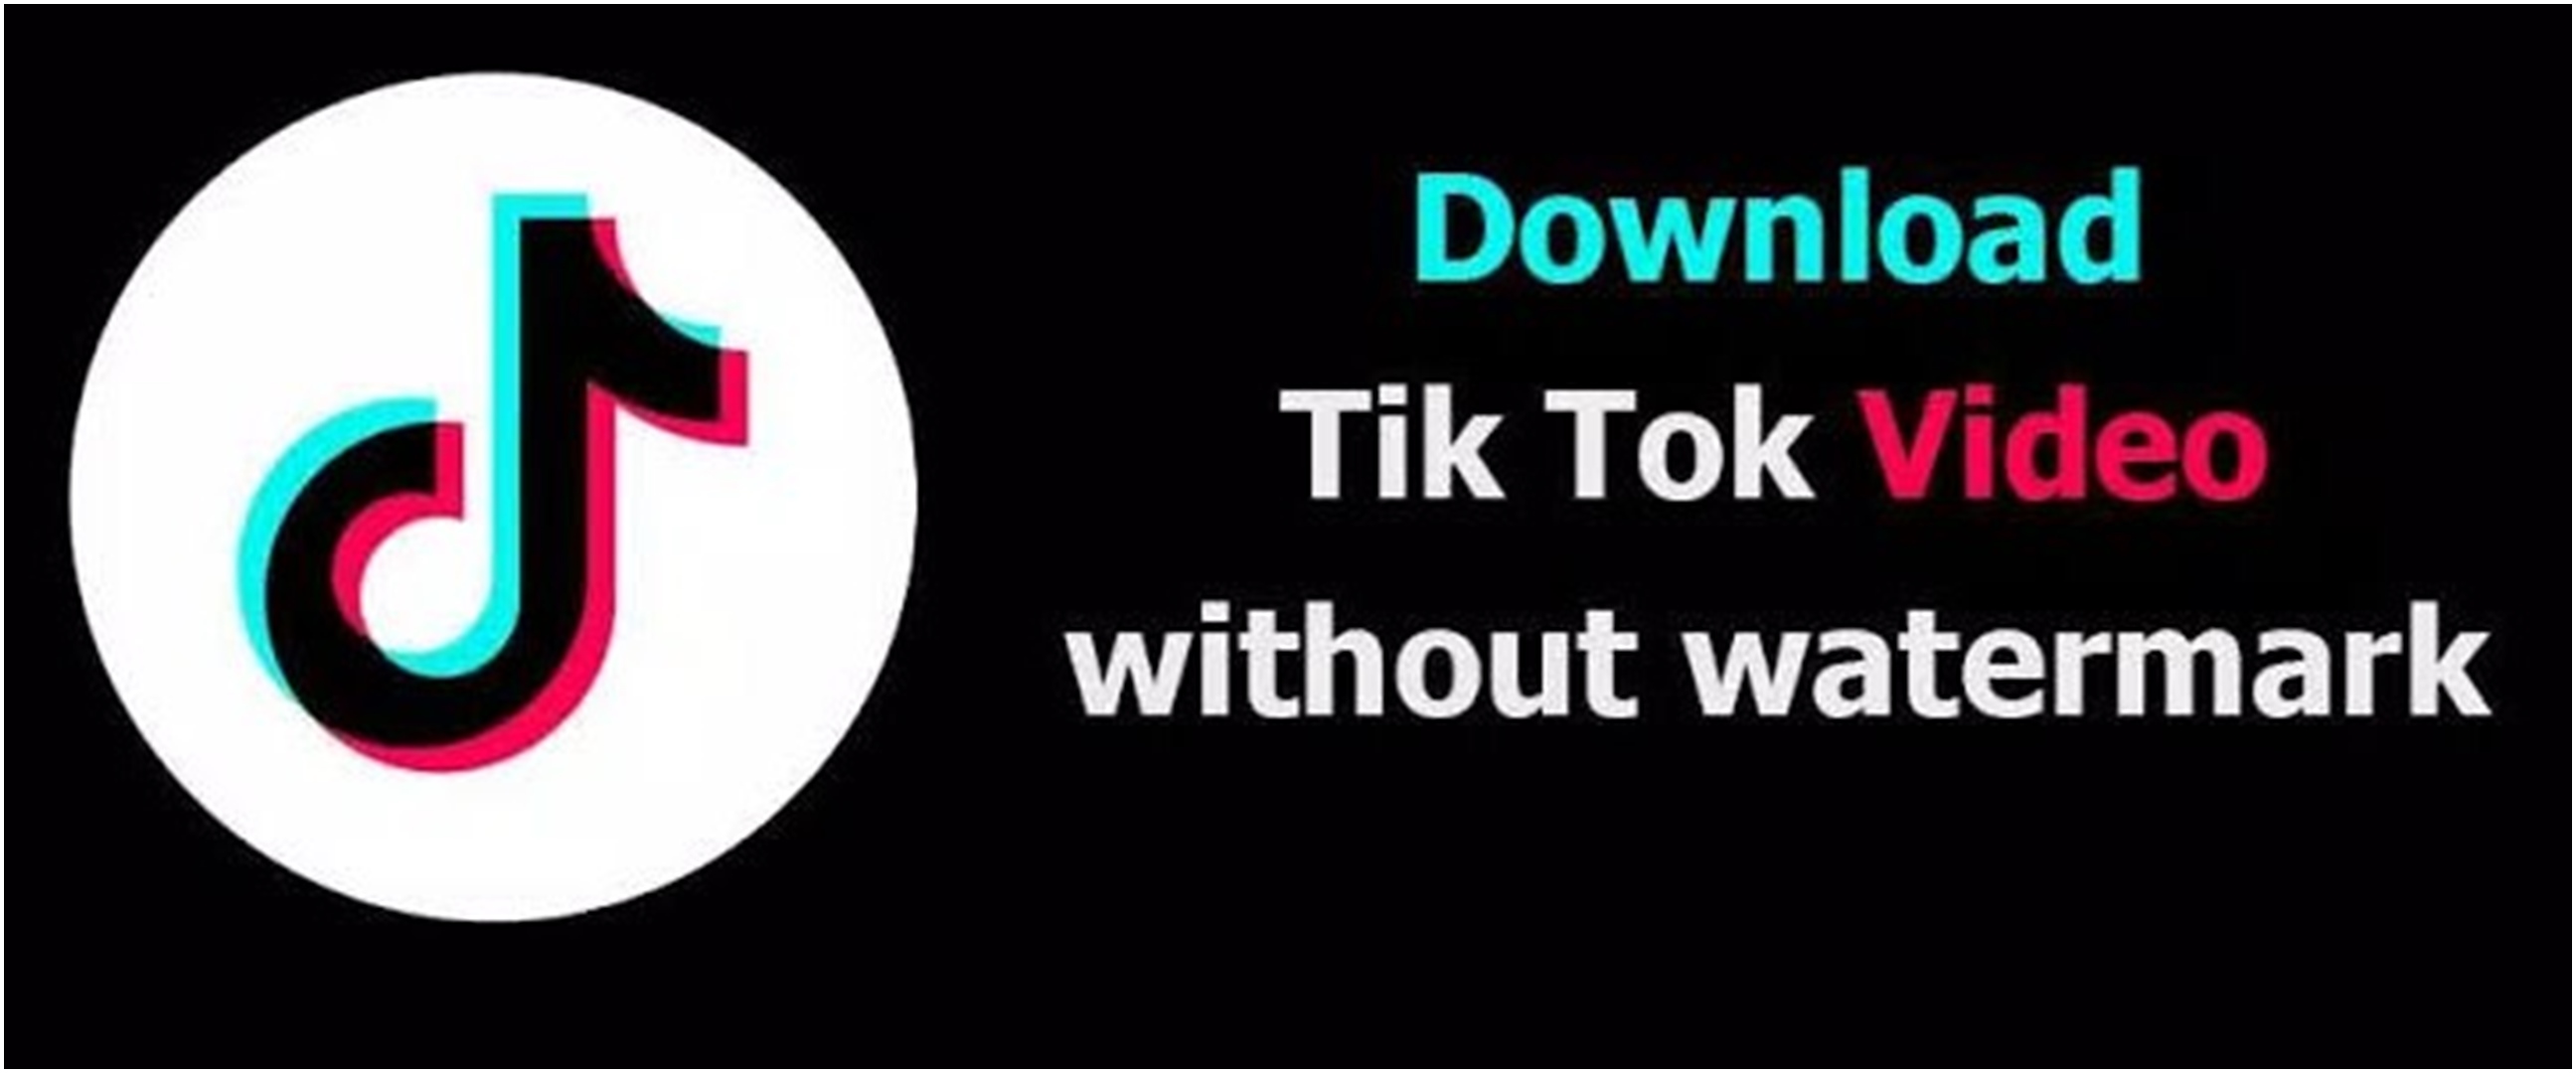 Bebas watermark dan gratis, ini 5 cara mudah download video TikTok pakai MusicallyDown